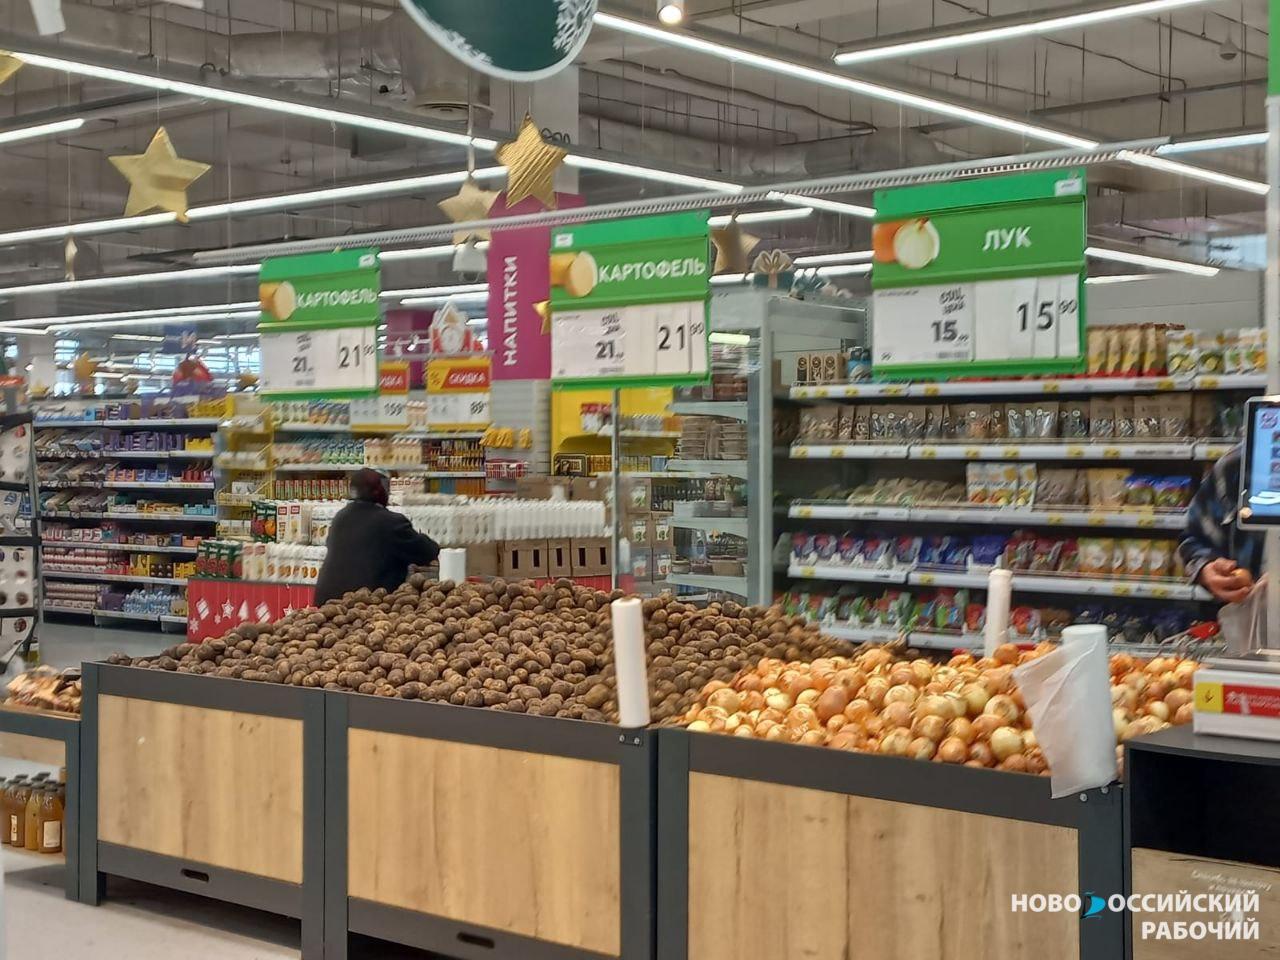 Новороссийцам выгодно покупать борщевой набор в магазинах